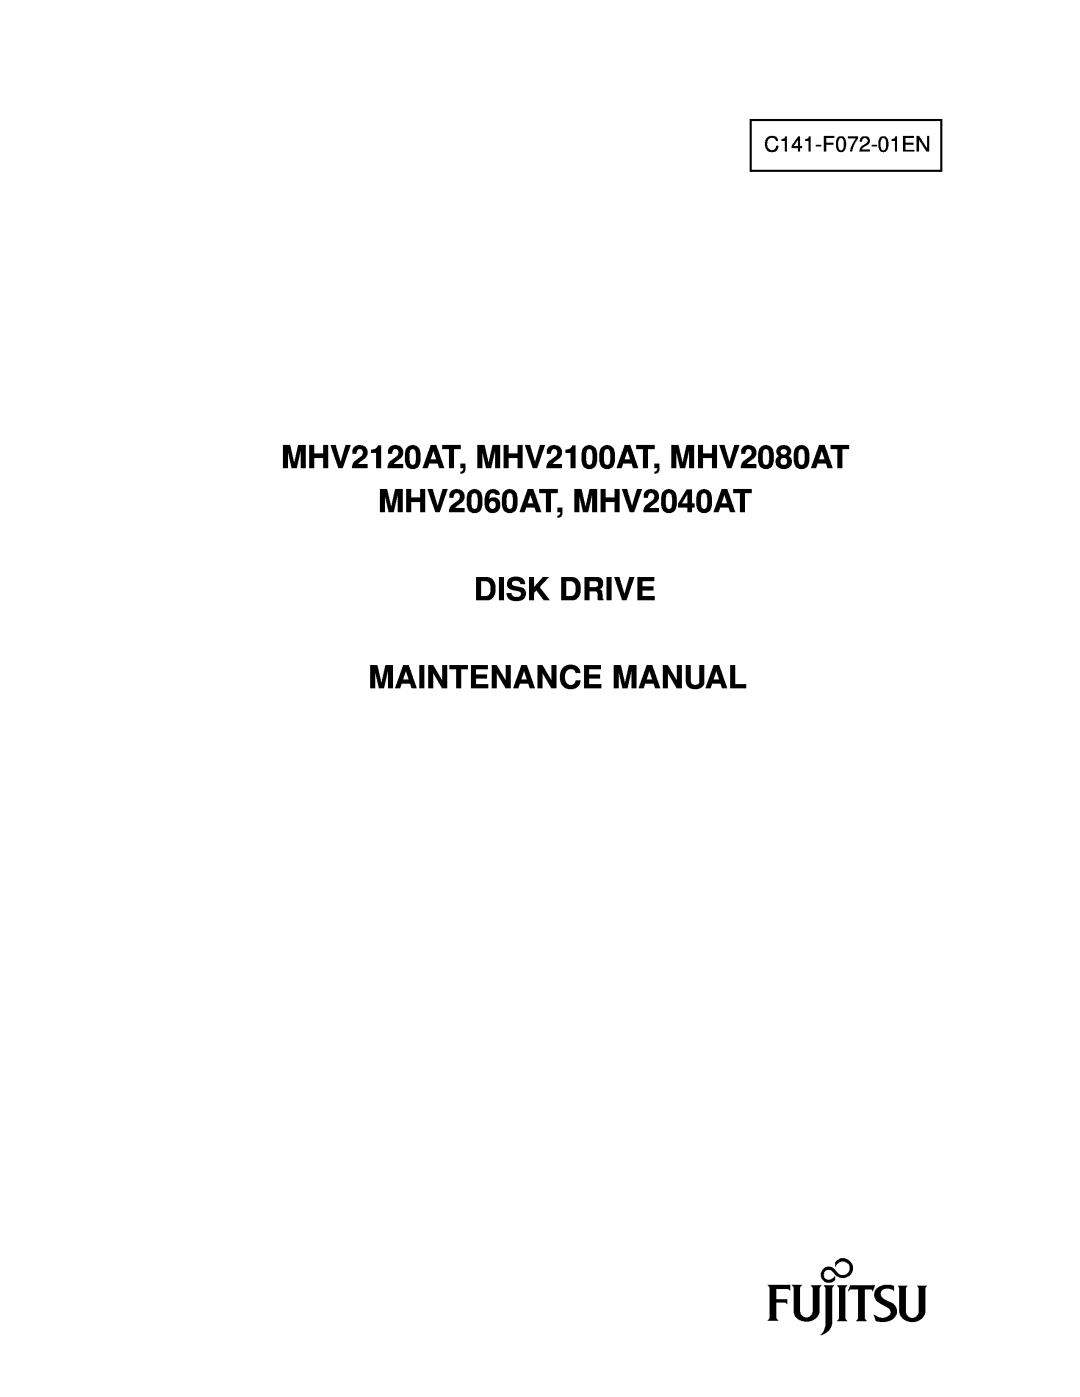 Fujitsu manual MHV2120AT, MHV2100AT, MHV2080AT MHV2060AT, MHV2040AT DISK DRIVE, Maintenance Manual, C141-F072-01EN 